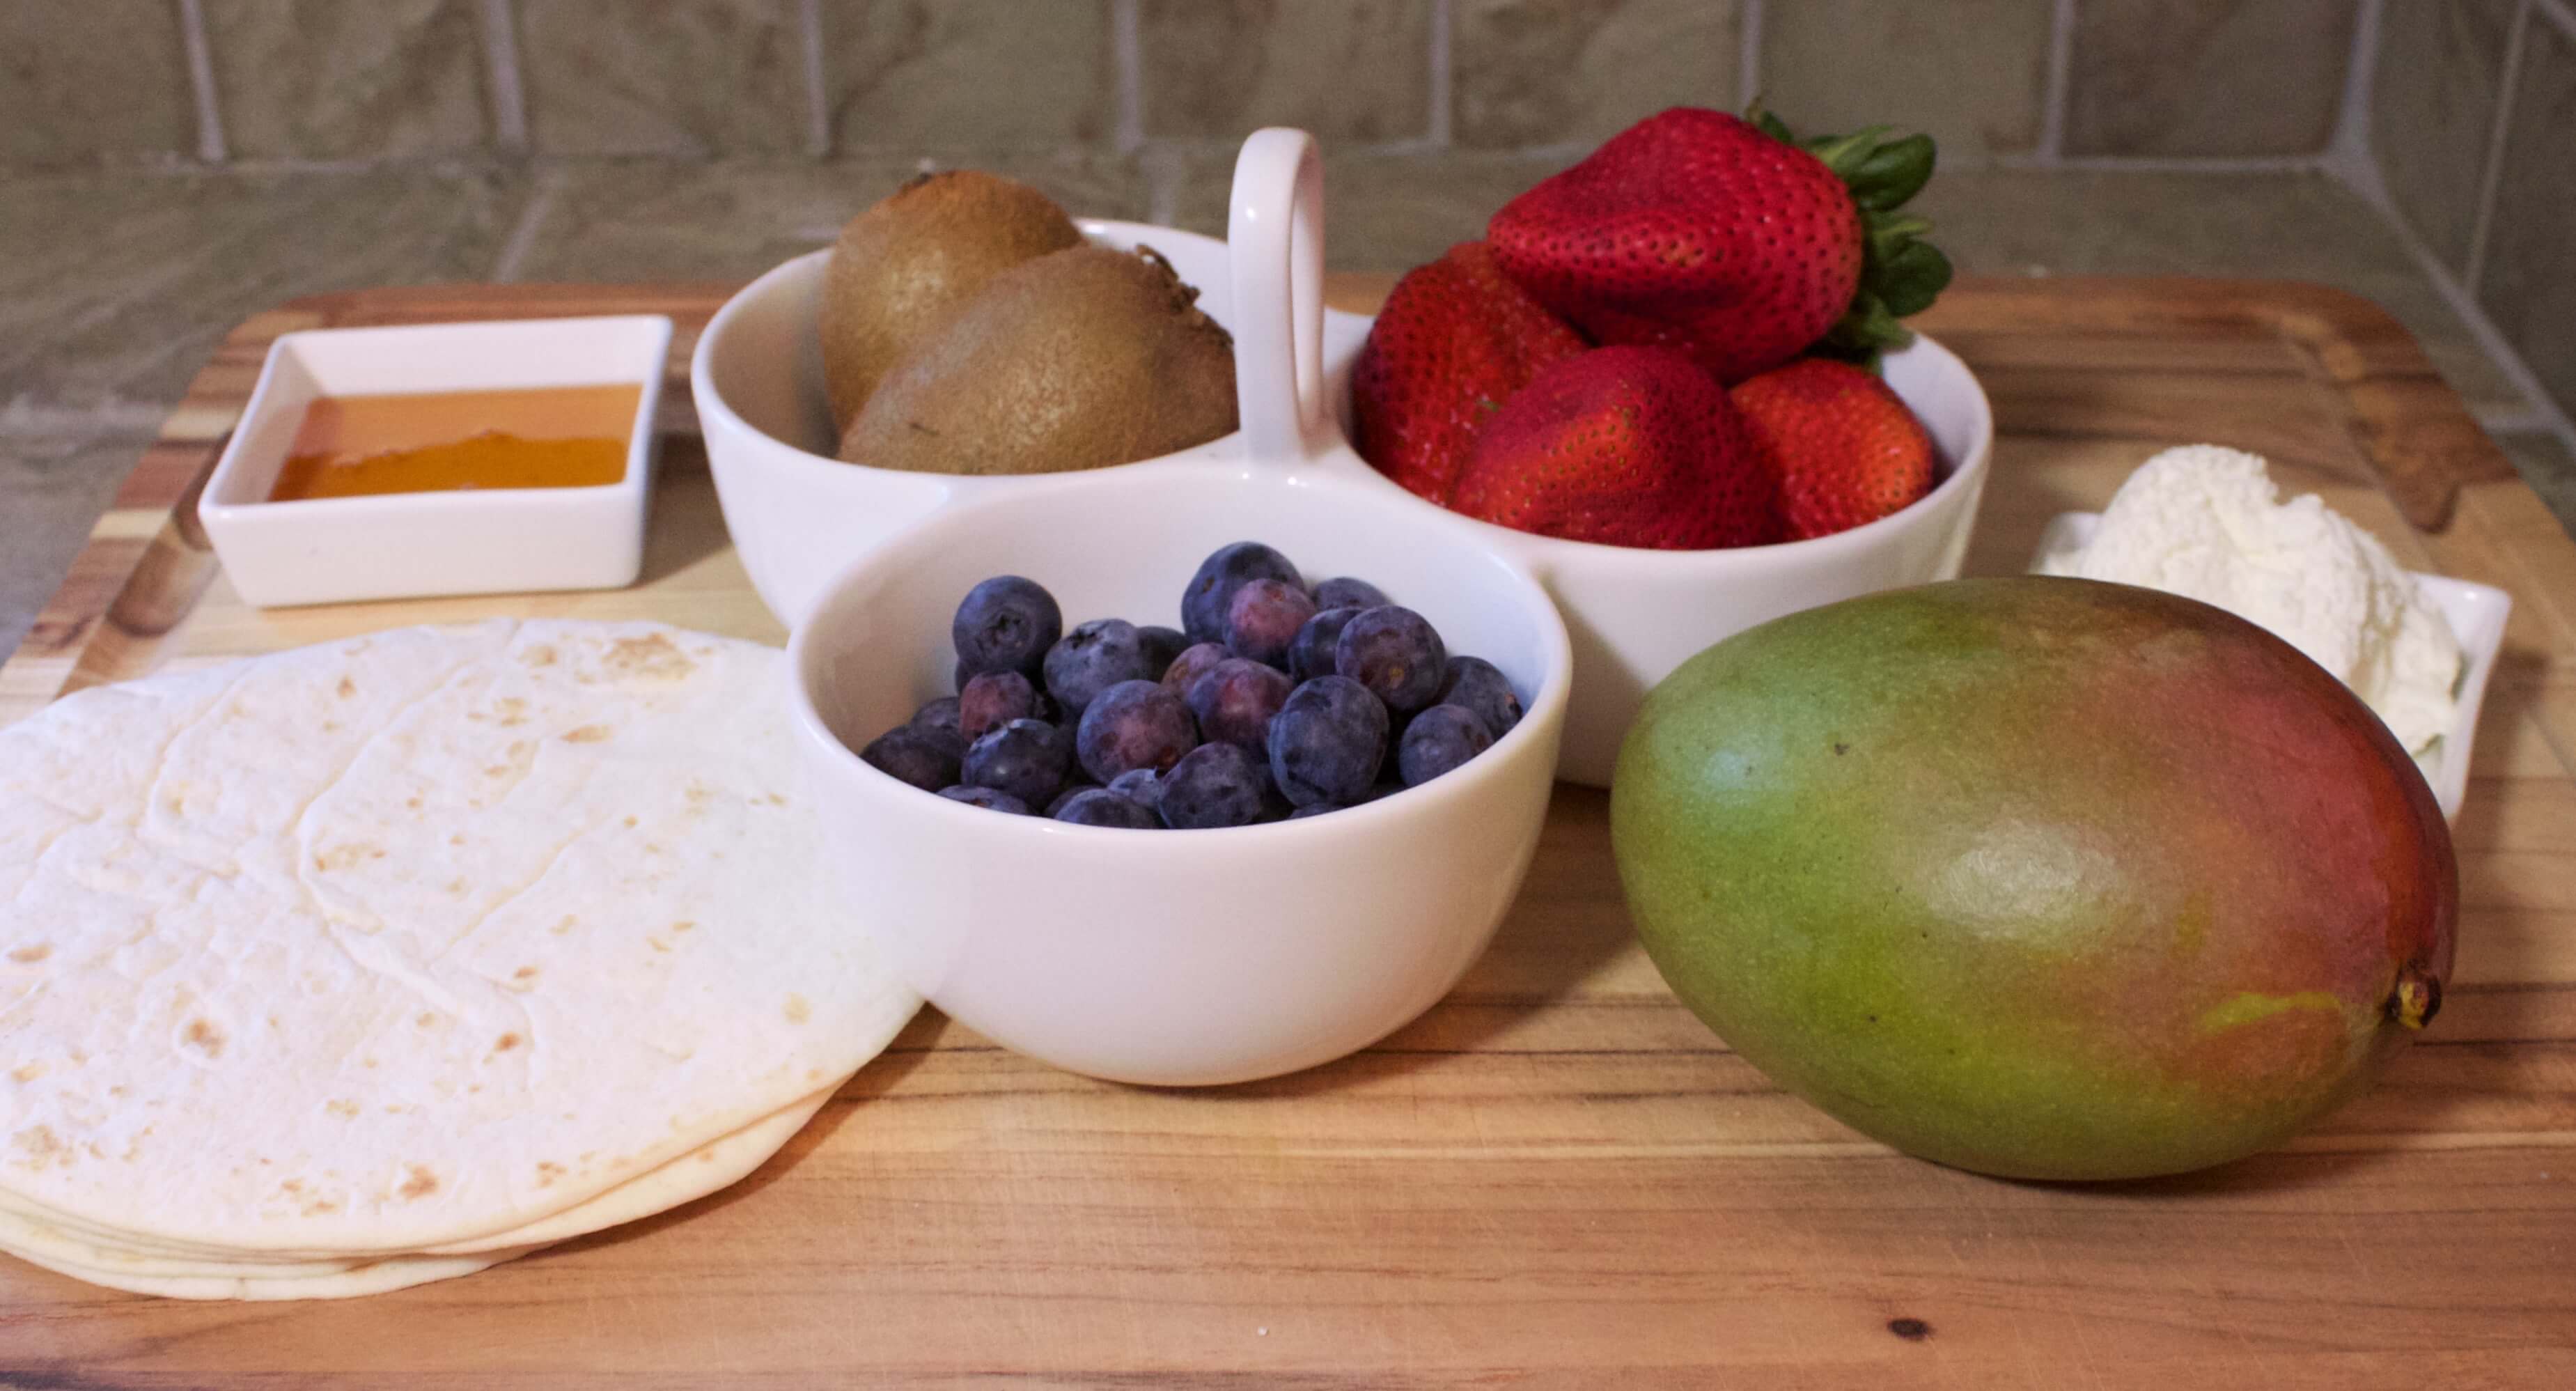 How to Make Dessert Fruit Tacos